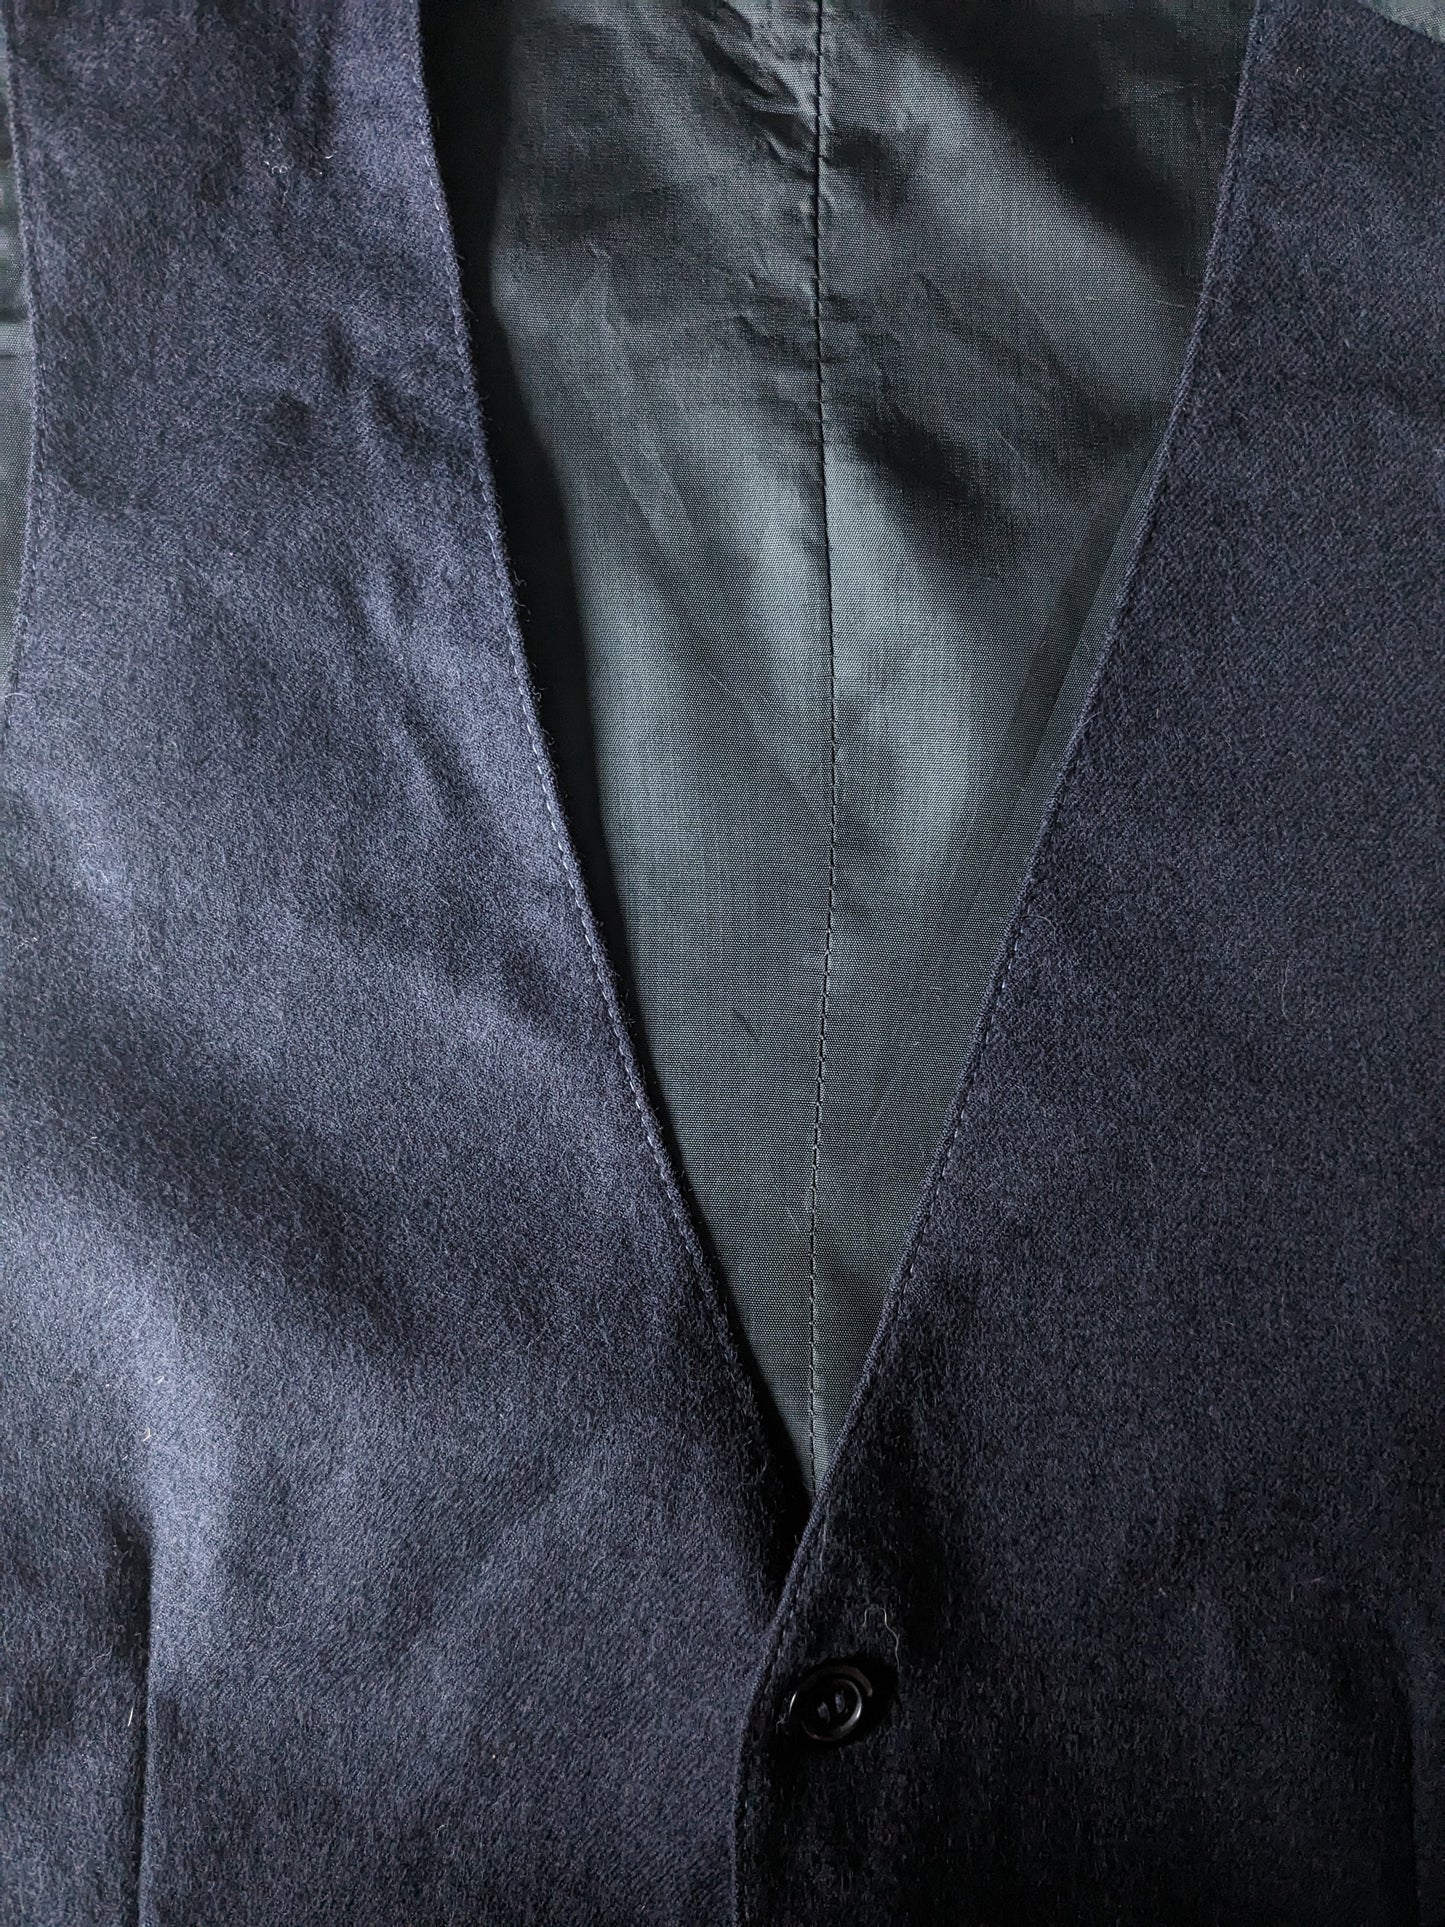 Gilet di lana. Colorato blu scuro. Taglia M. #333.